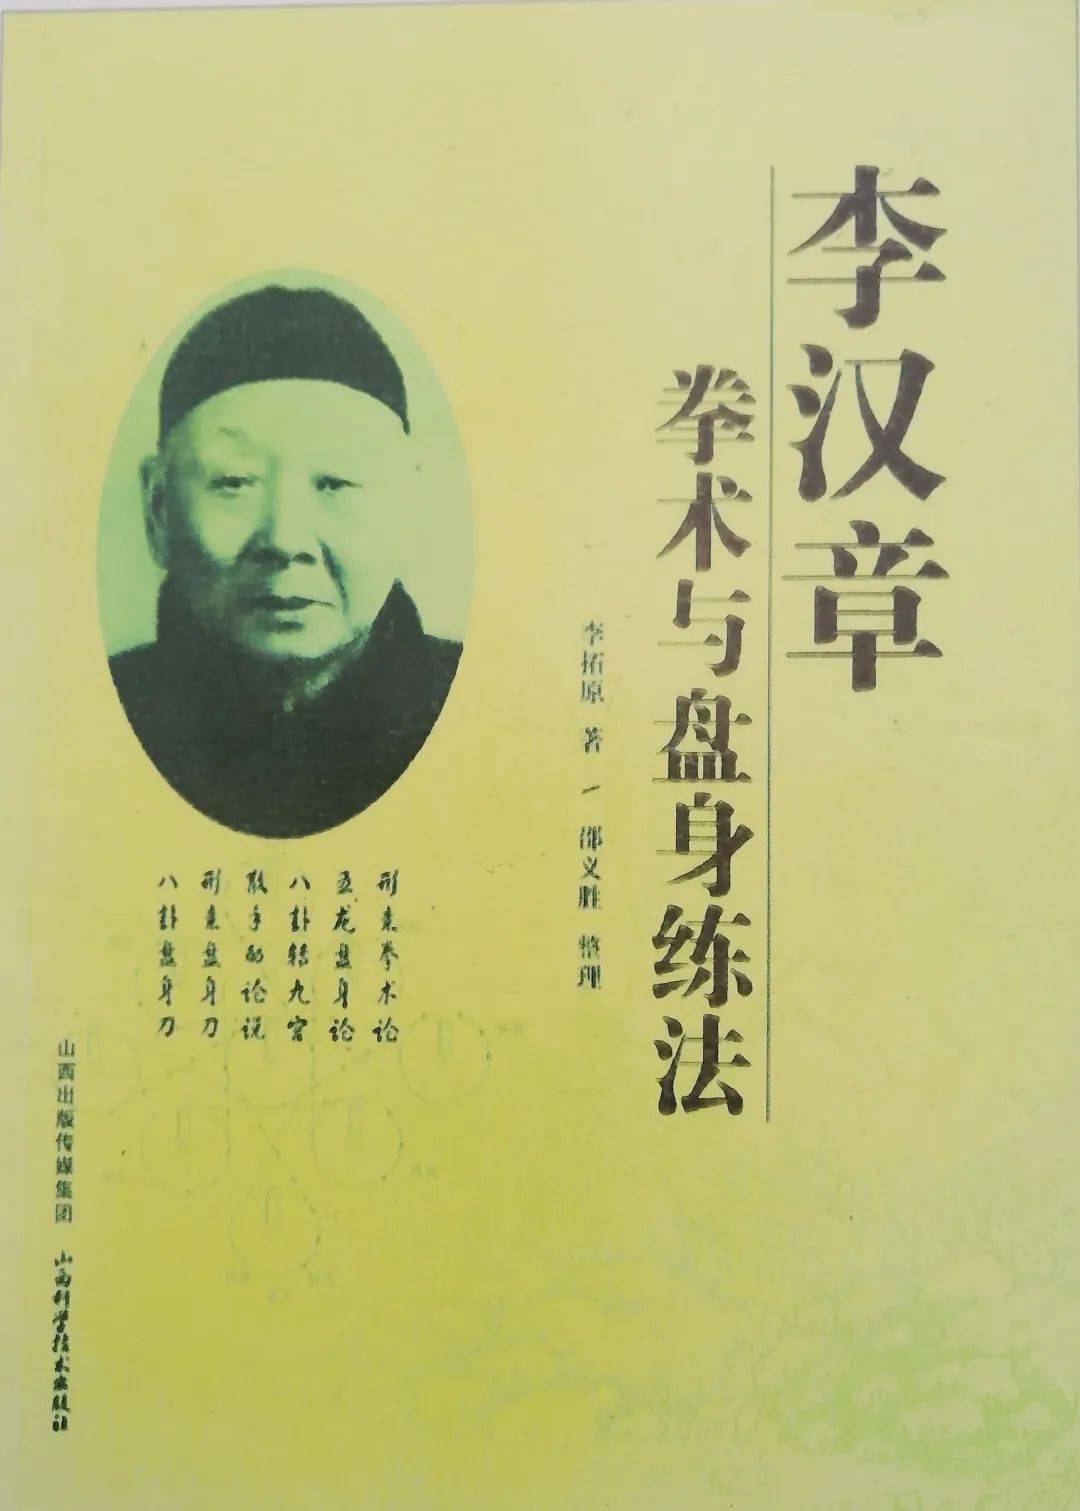 1990年,汉沽区纪念李汉章诞辰110周年,孙氏太极拳研究会会长孙剑云为